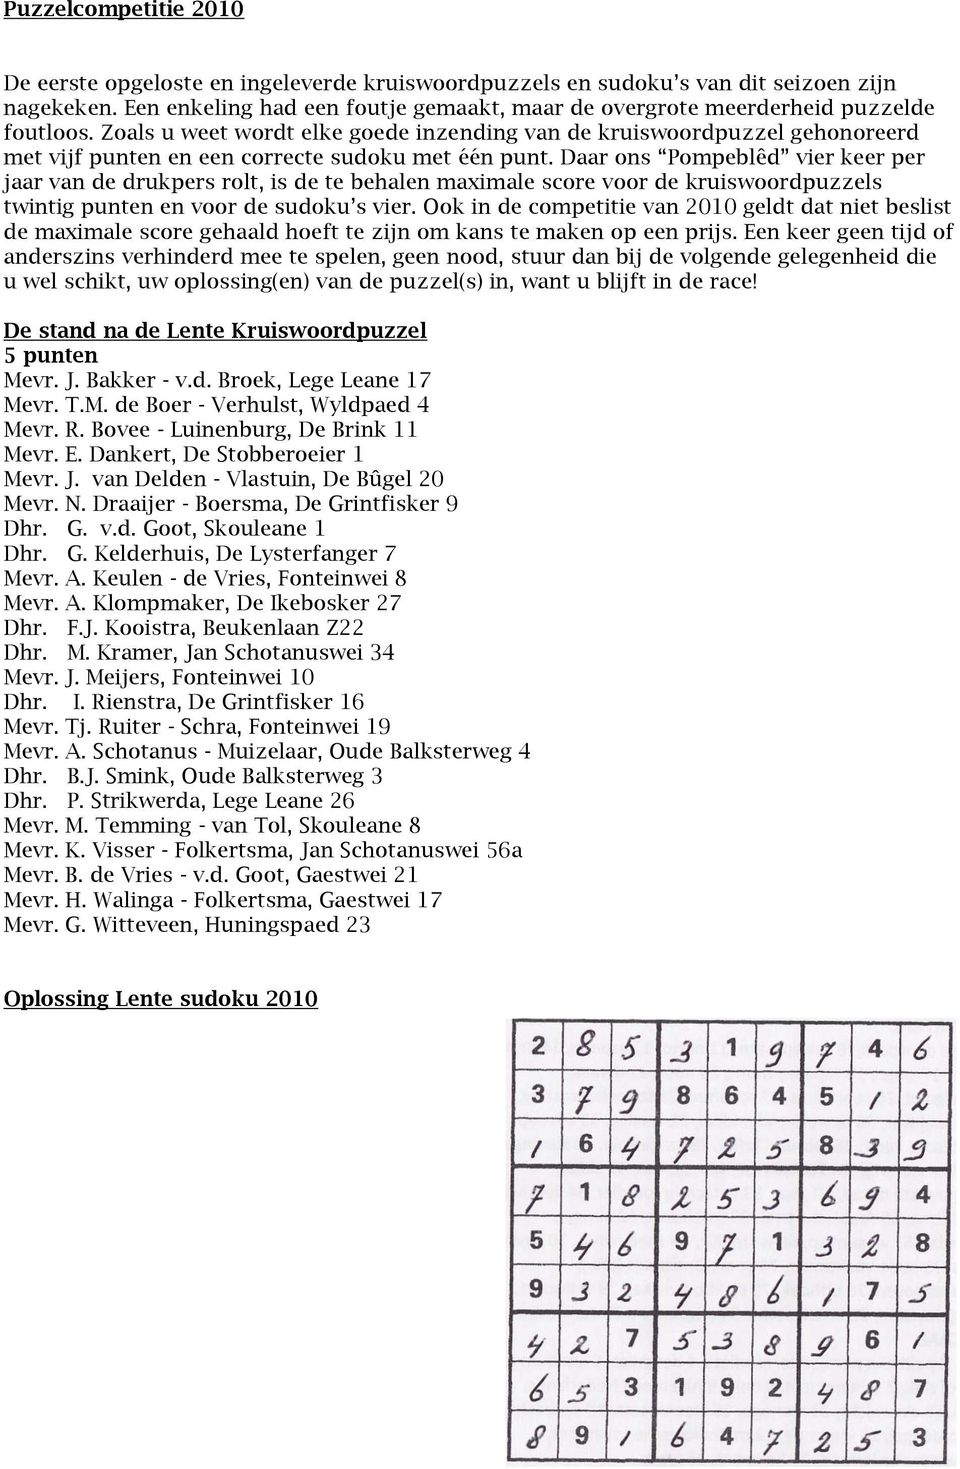 Zoals u weet wordt elke goede inzending van de kruiswoordpuzzel gehonoreerd met vijf punten en een correcte sudoku met één punt.